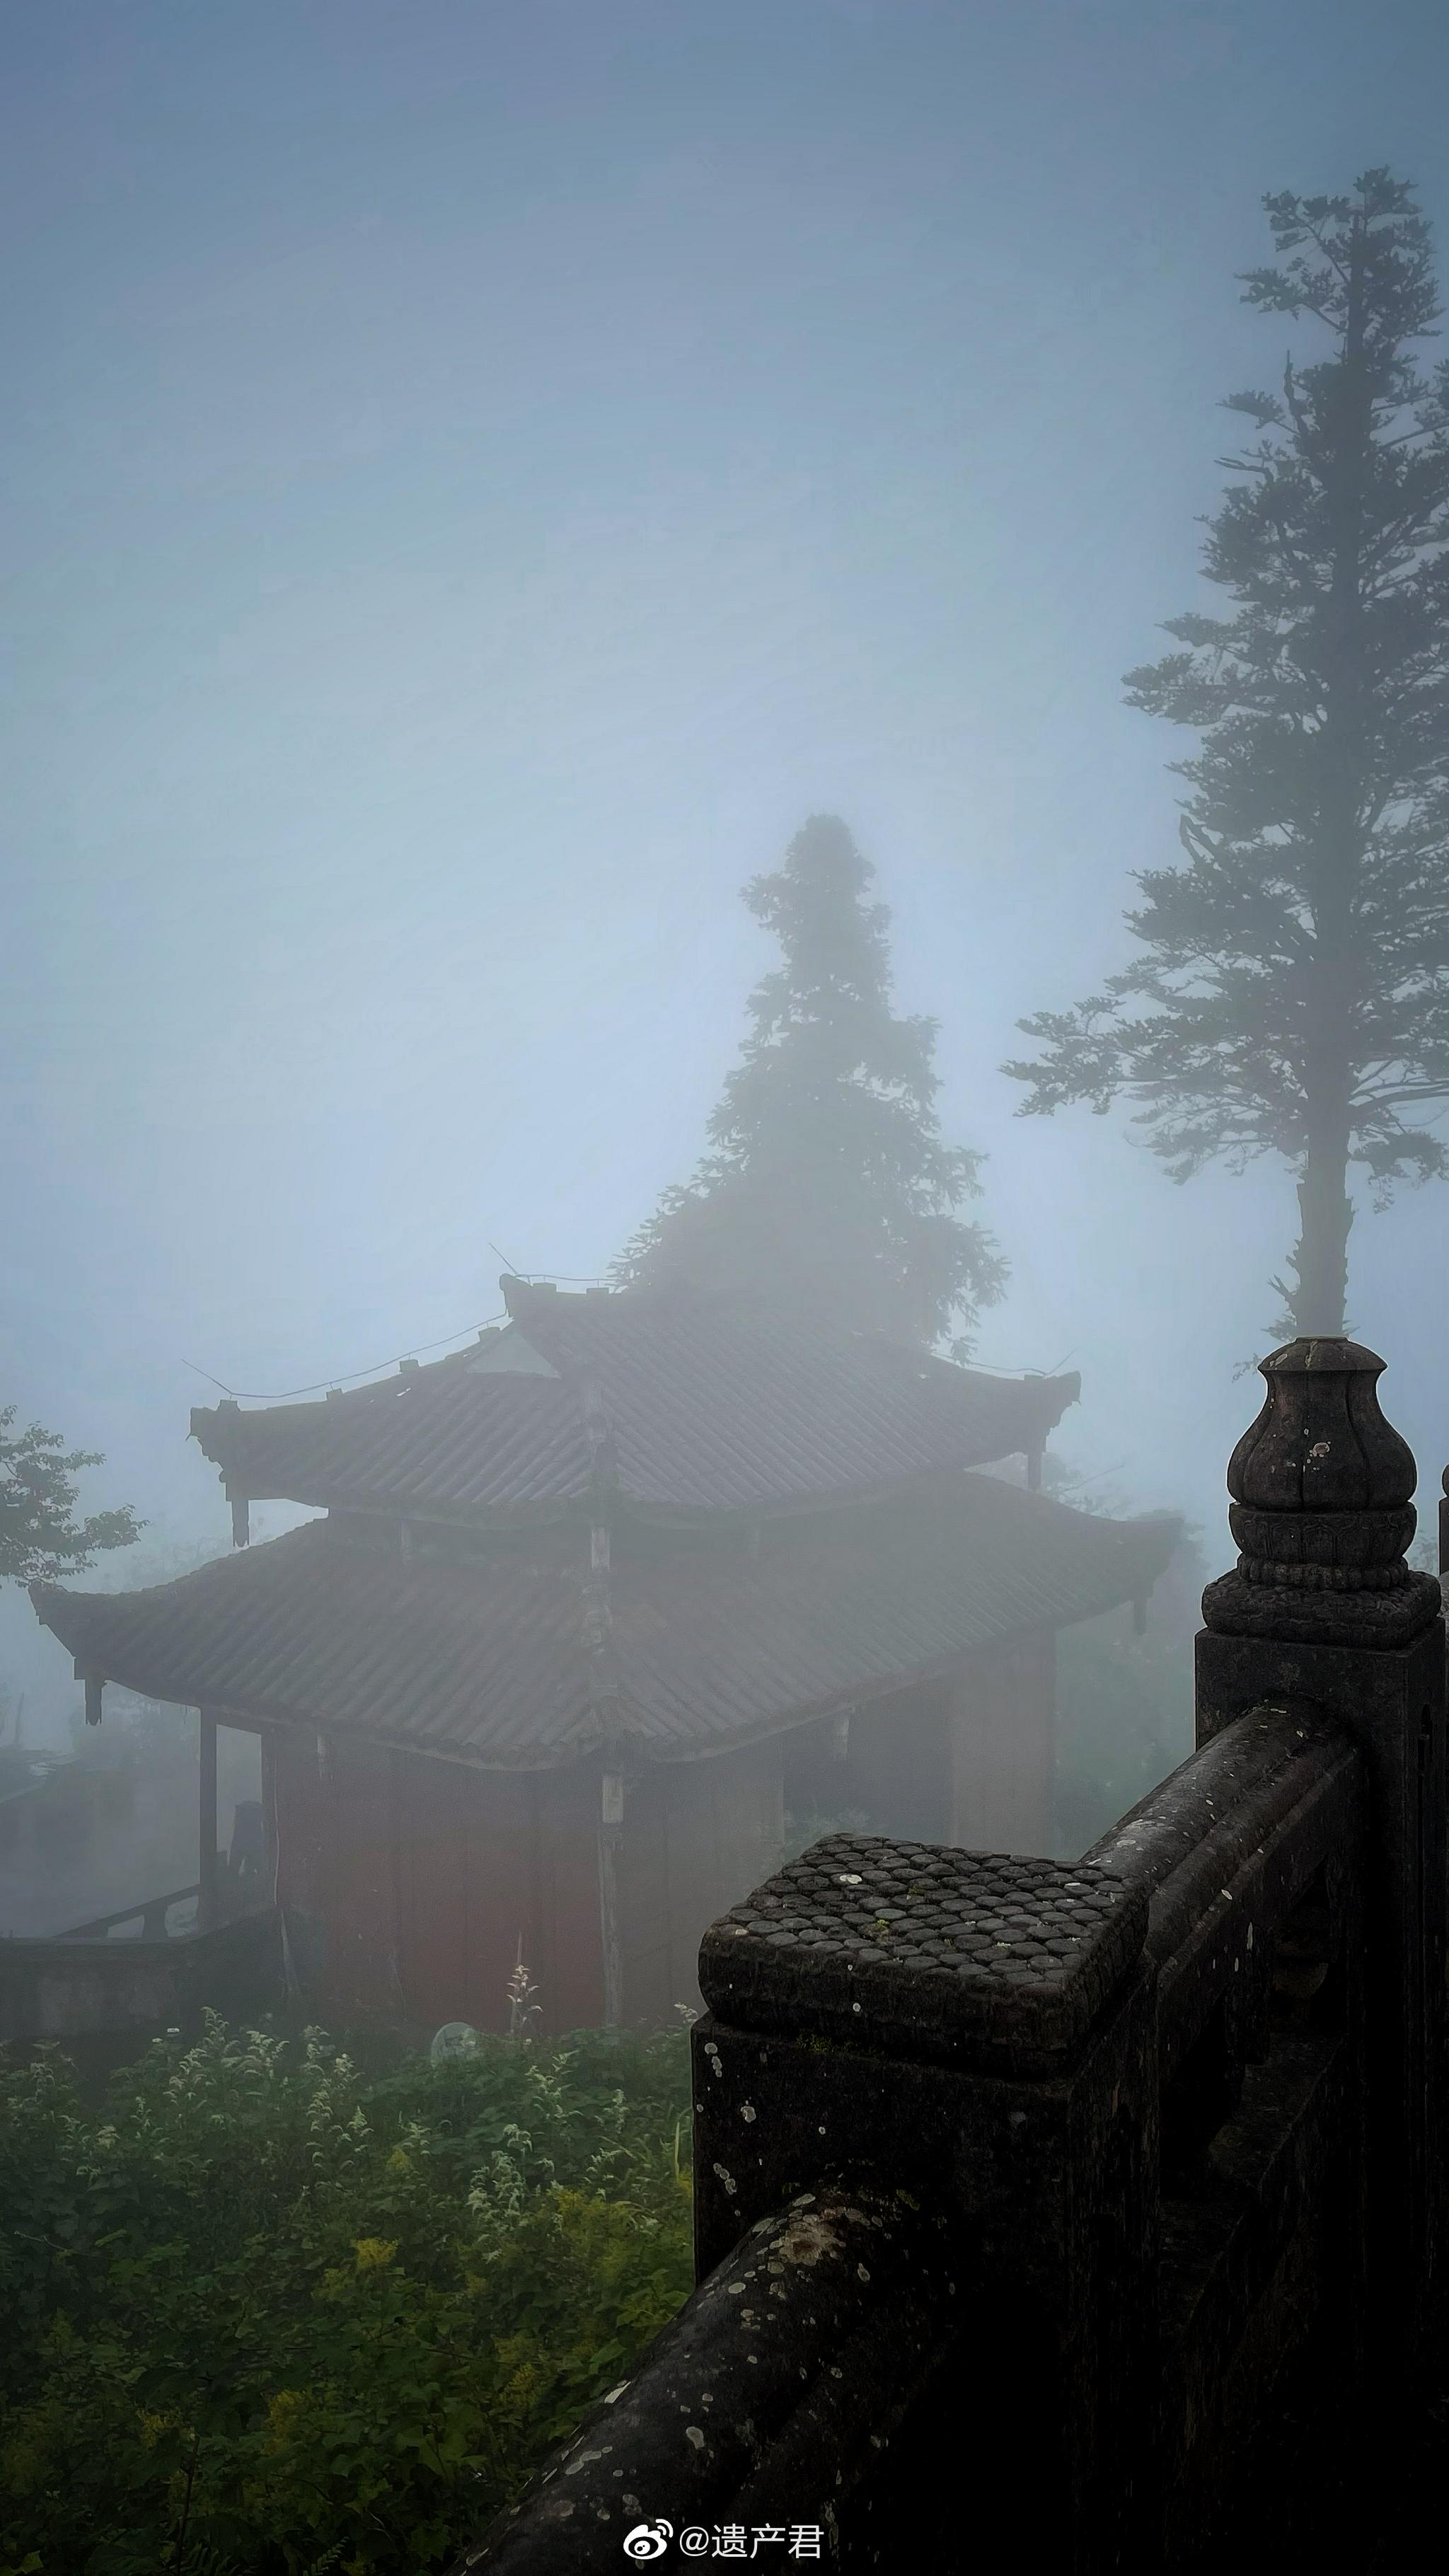 峨眉山寺院风景图片